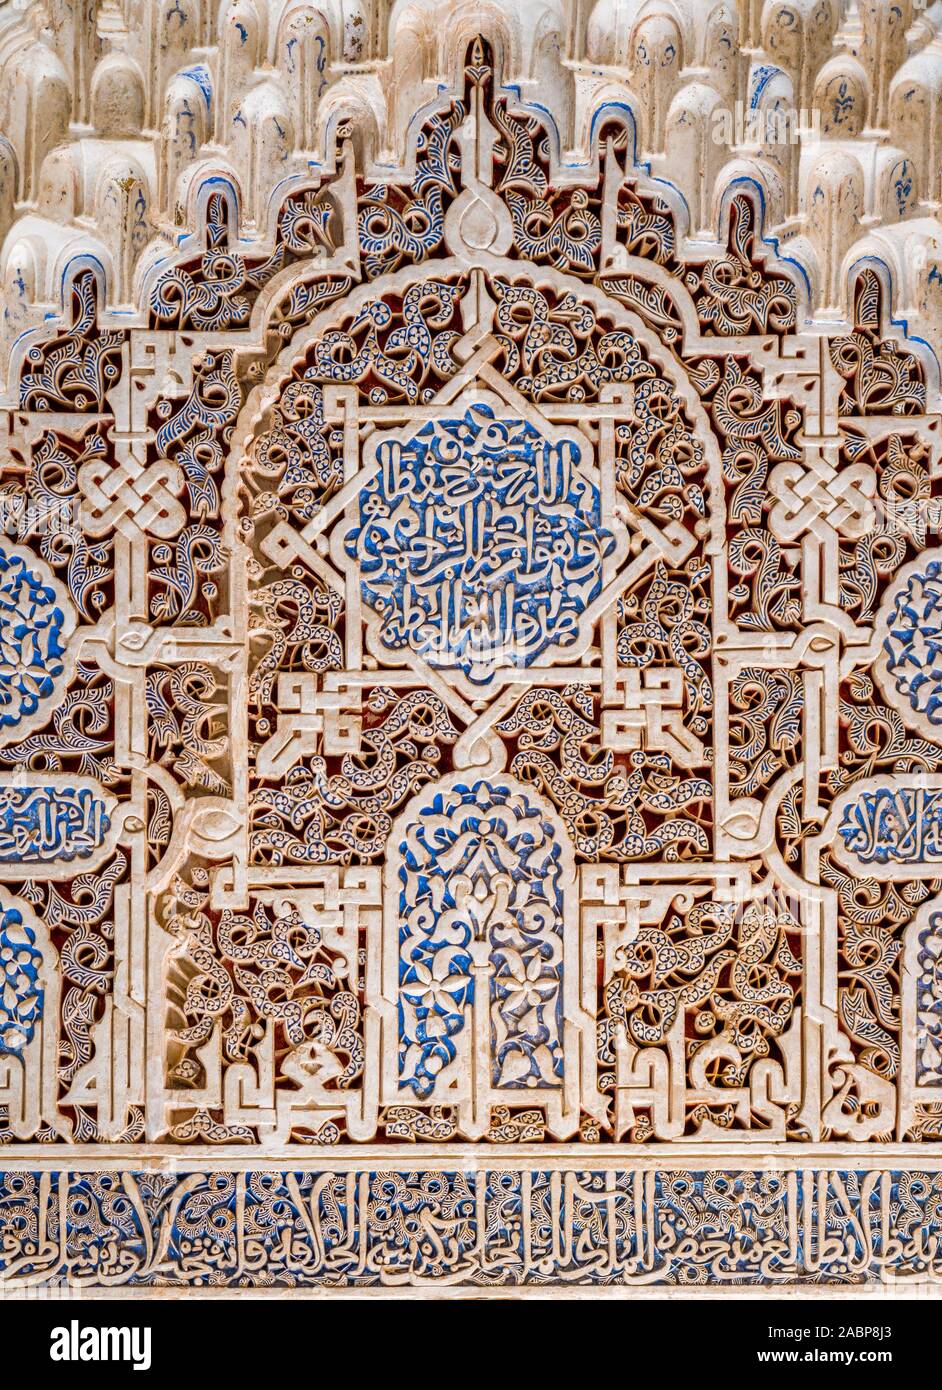 Fein dekorierte Wände in der Alhambra in Granada mit arabischen Inschriften. Andalusien, Spanien. Juni -03-2019 Stockfoto